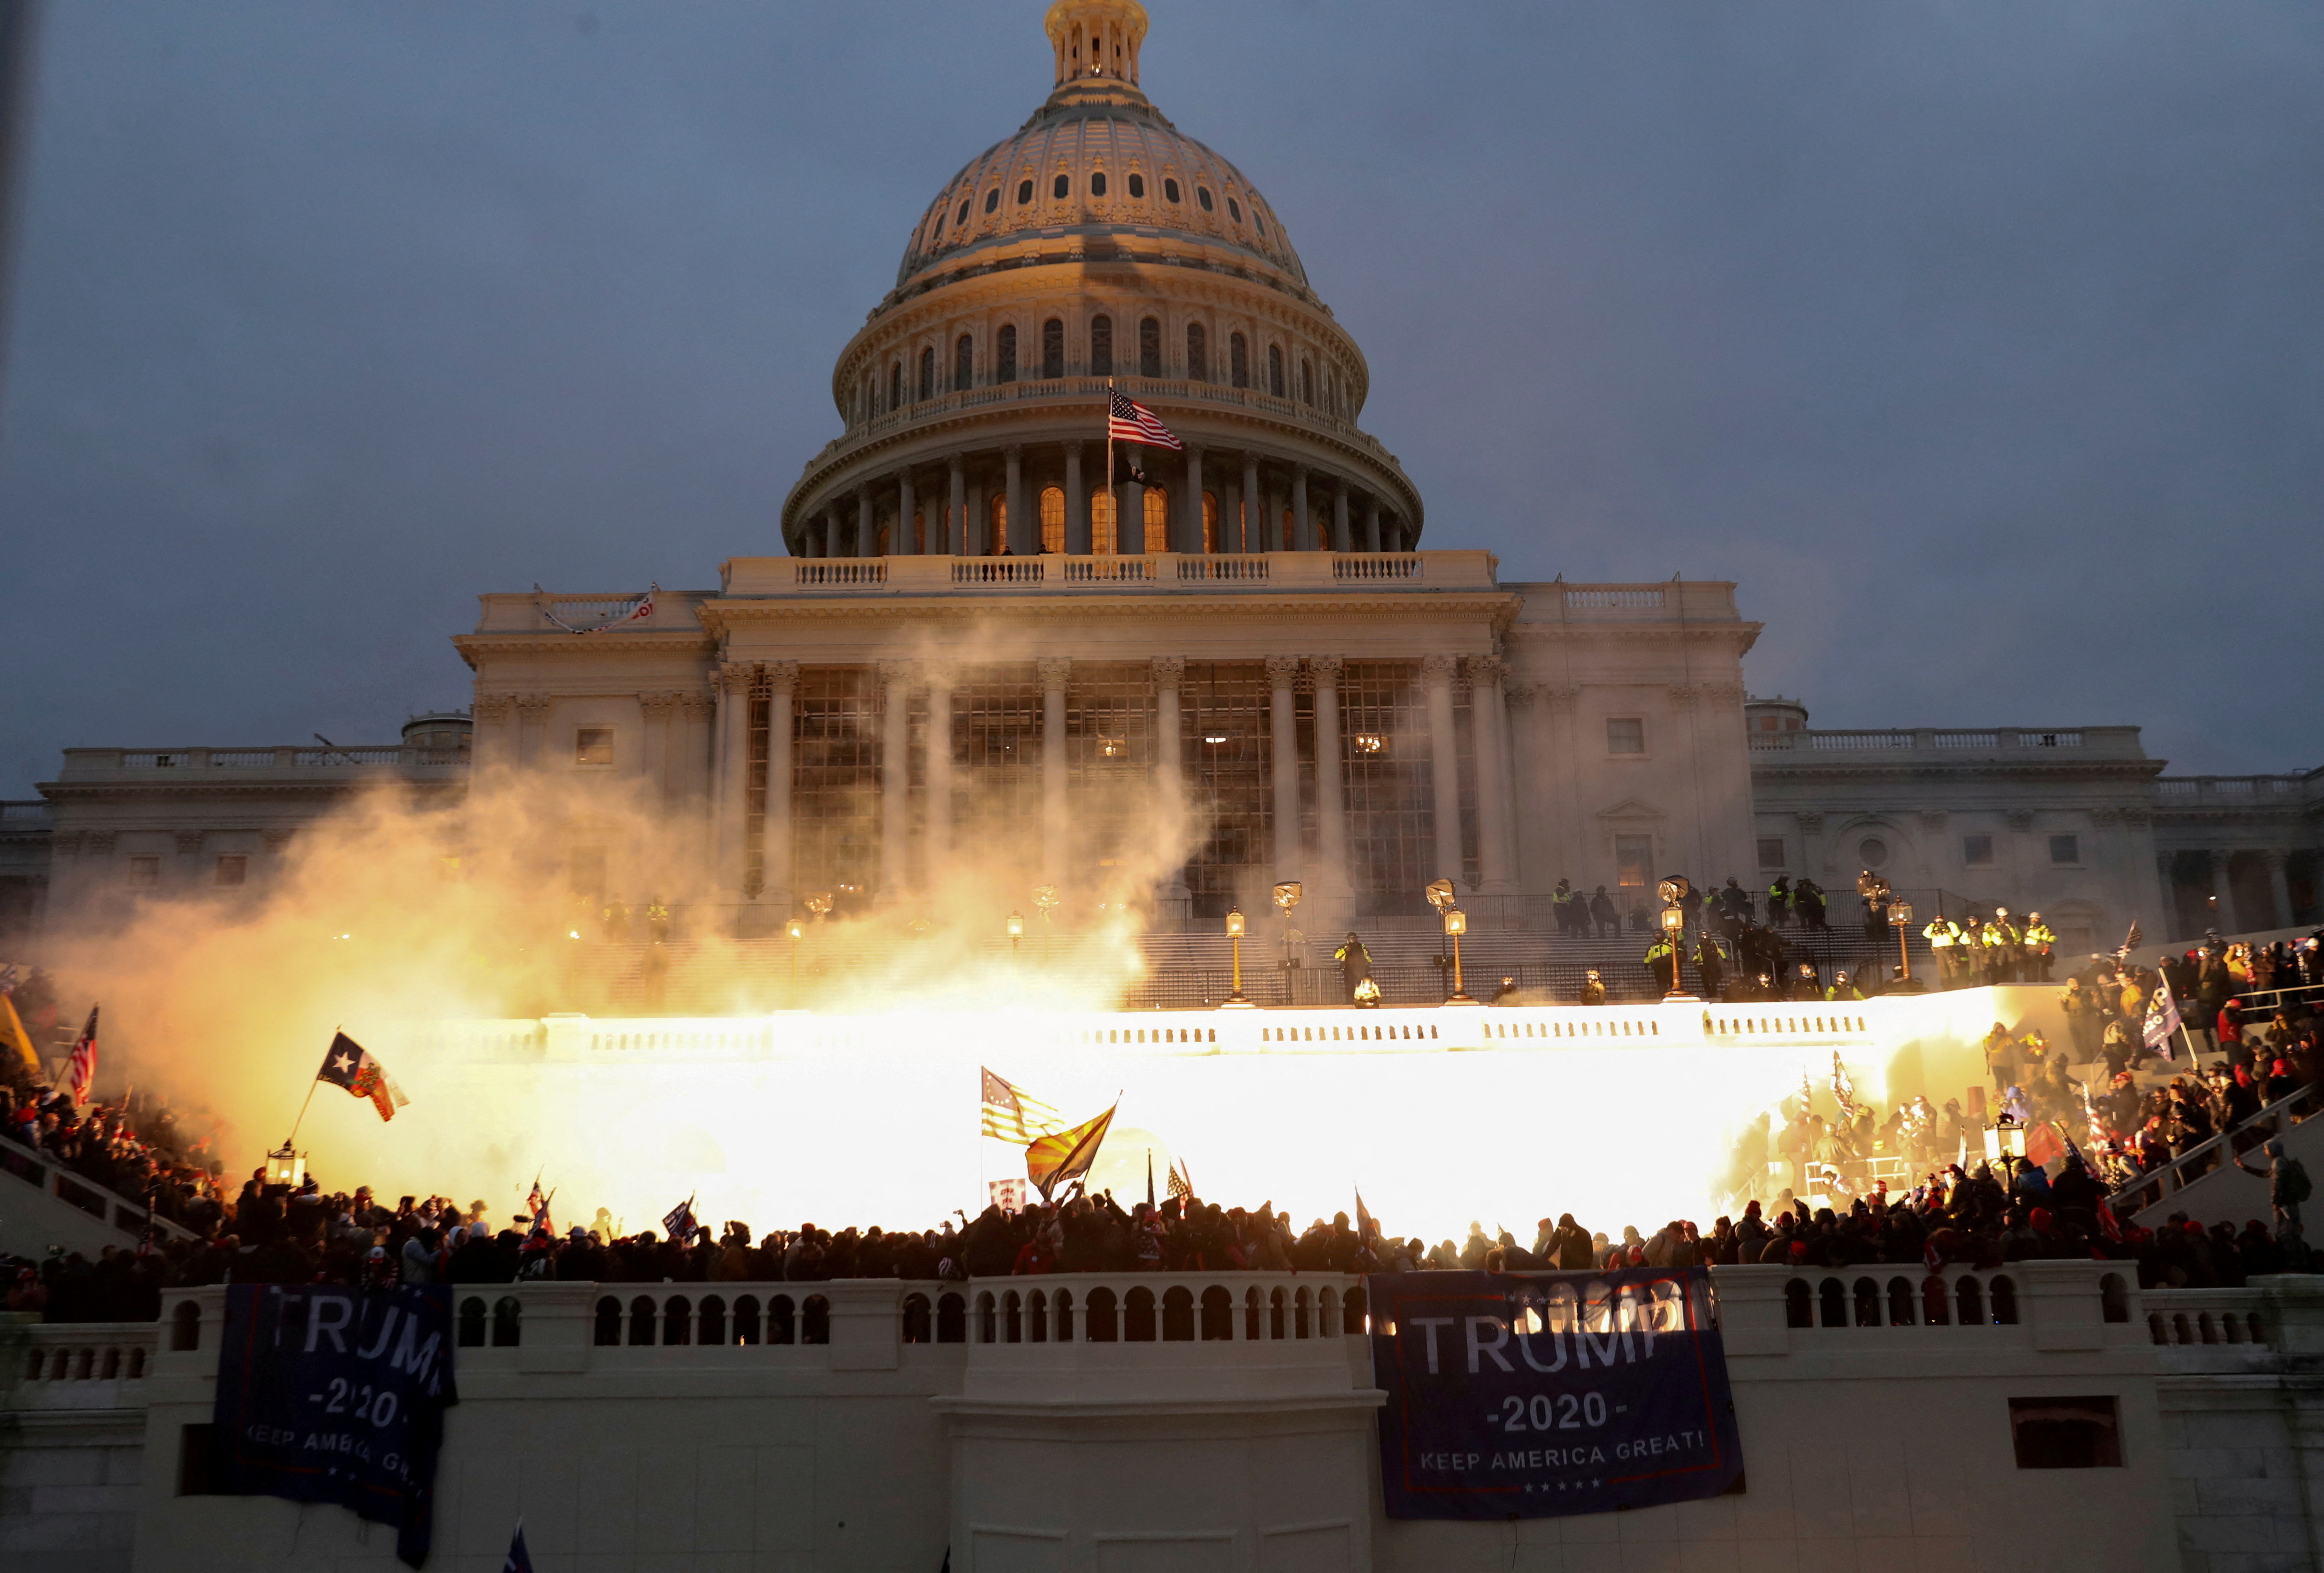 Foto de archivo: Una explosión causada por una munición de la policía se ve mientras los partidarios de Trump protestan frente al edificio del Capitolio de Estados Unidos el 6 de enero de 2021 (Reuters)